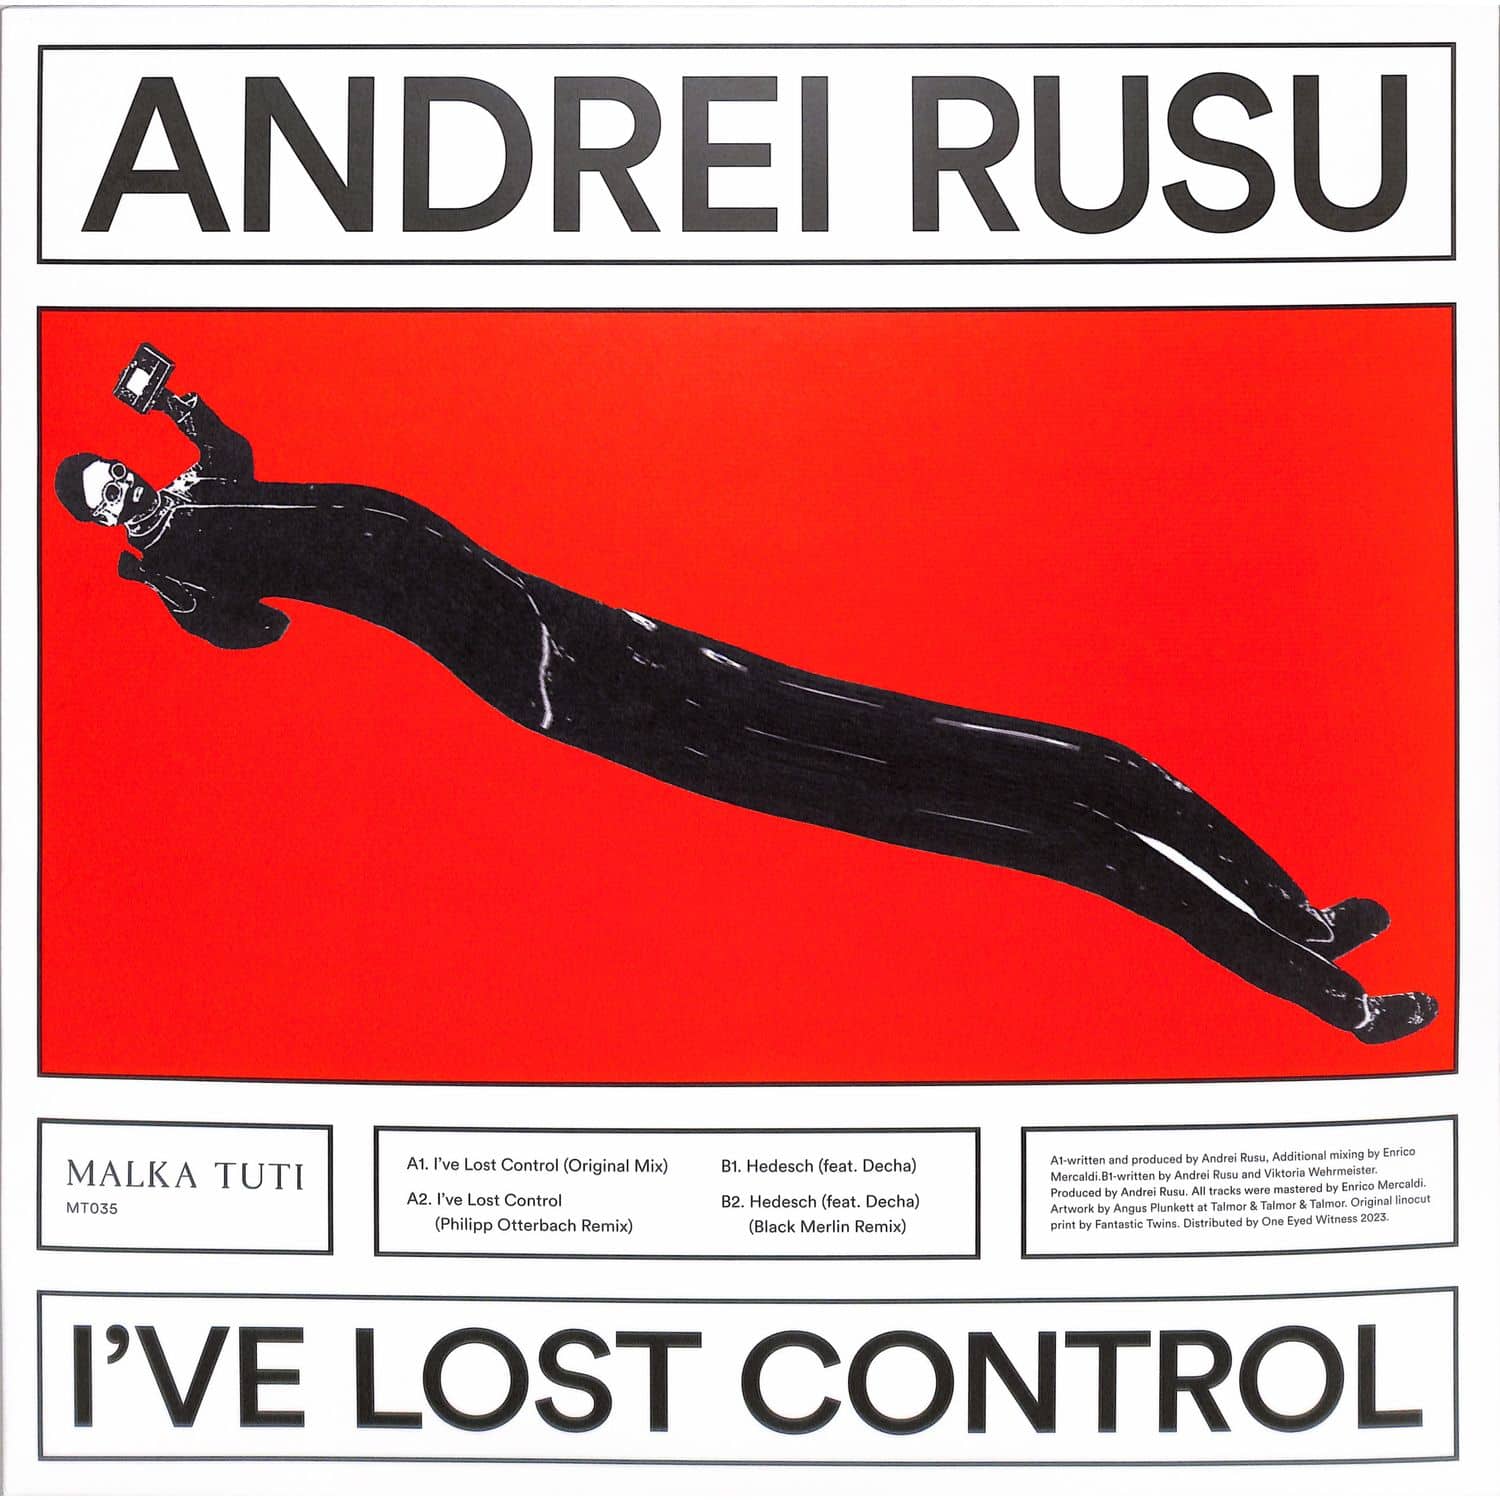 Andrei Rusu - I VE LOST CONTROL